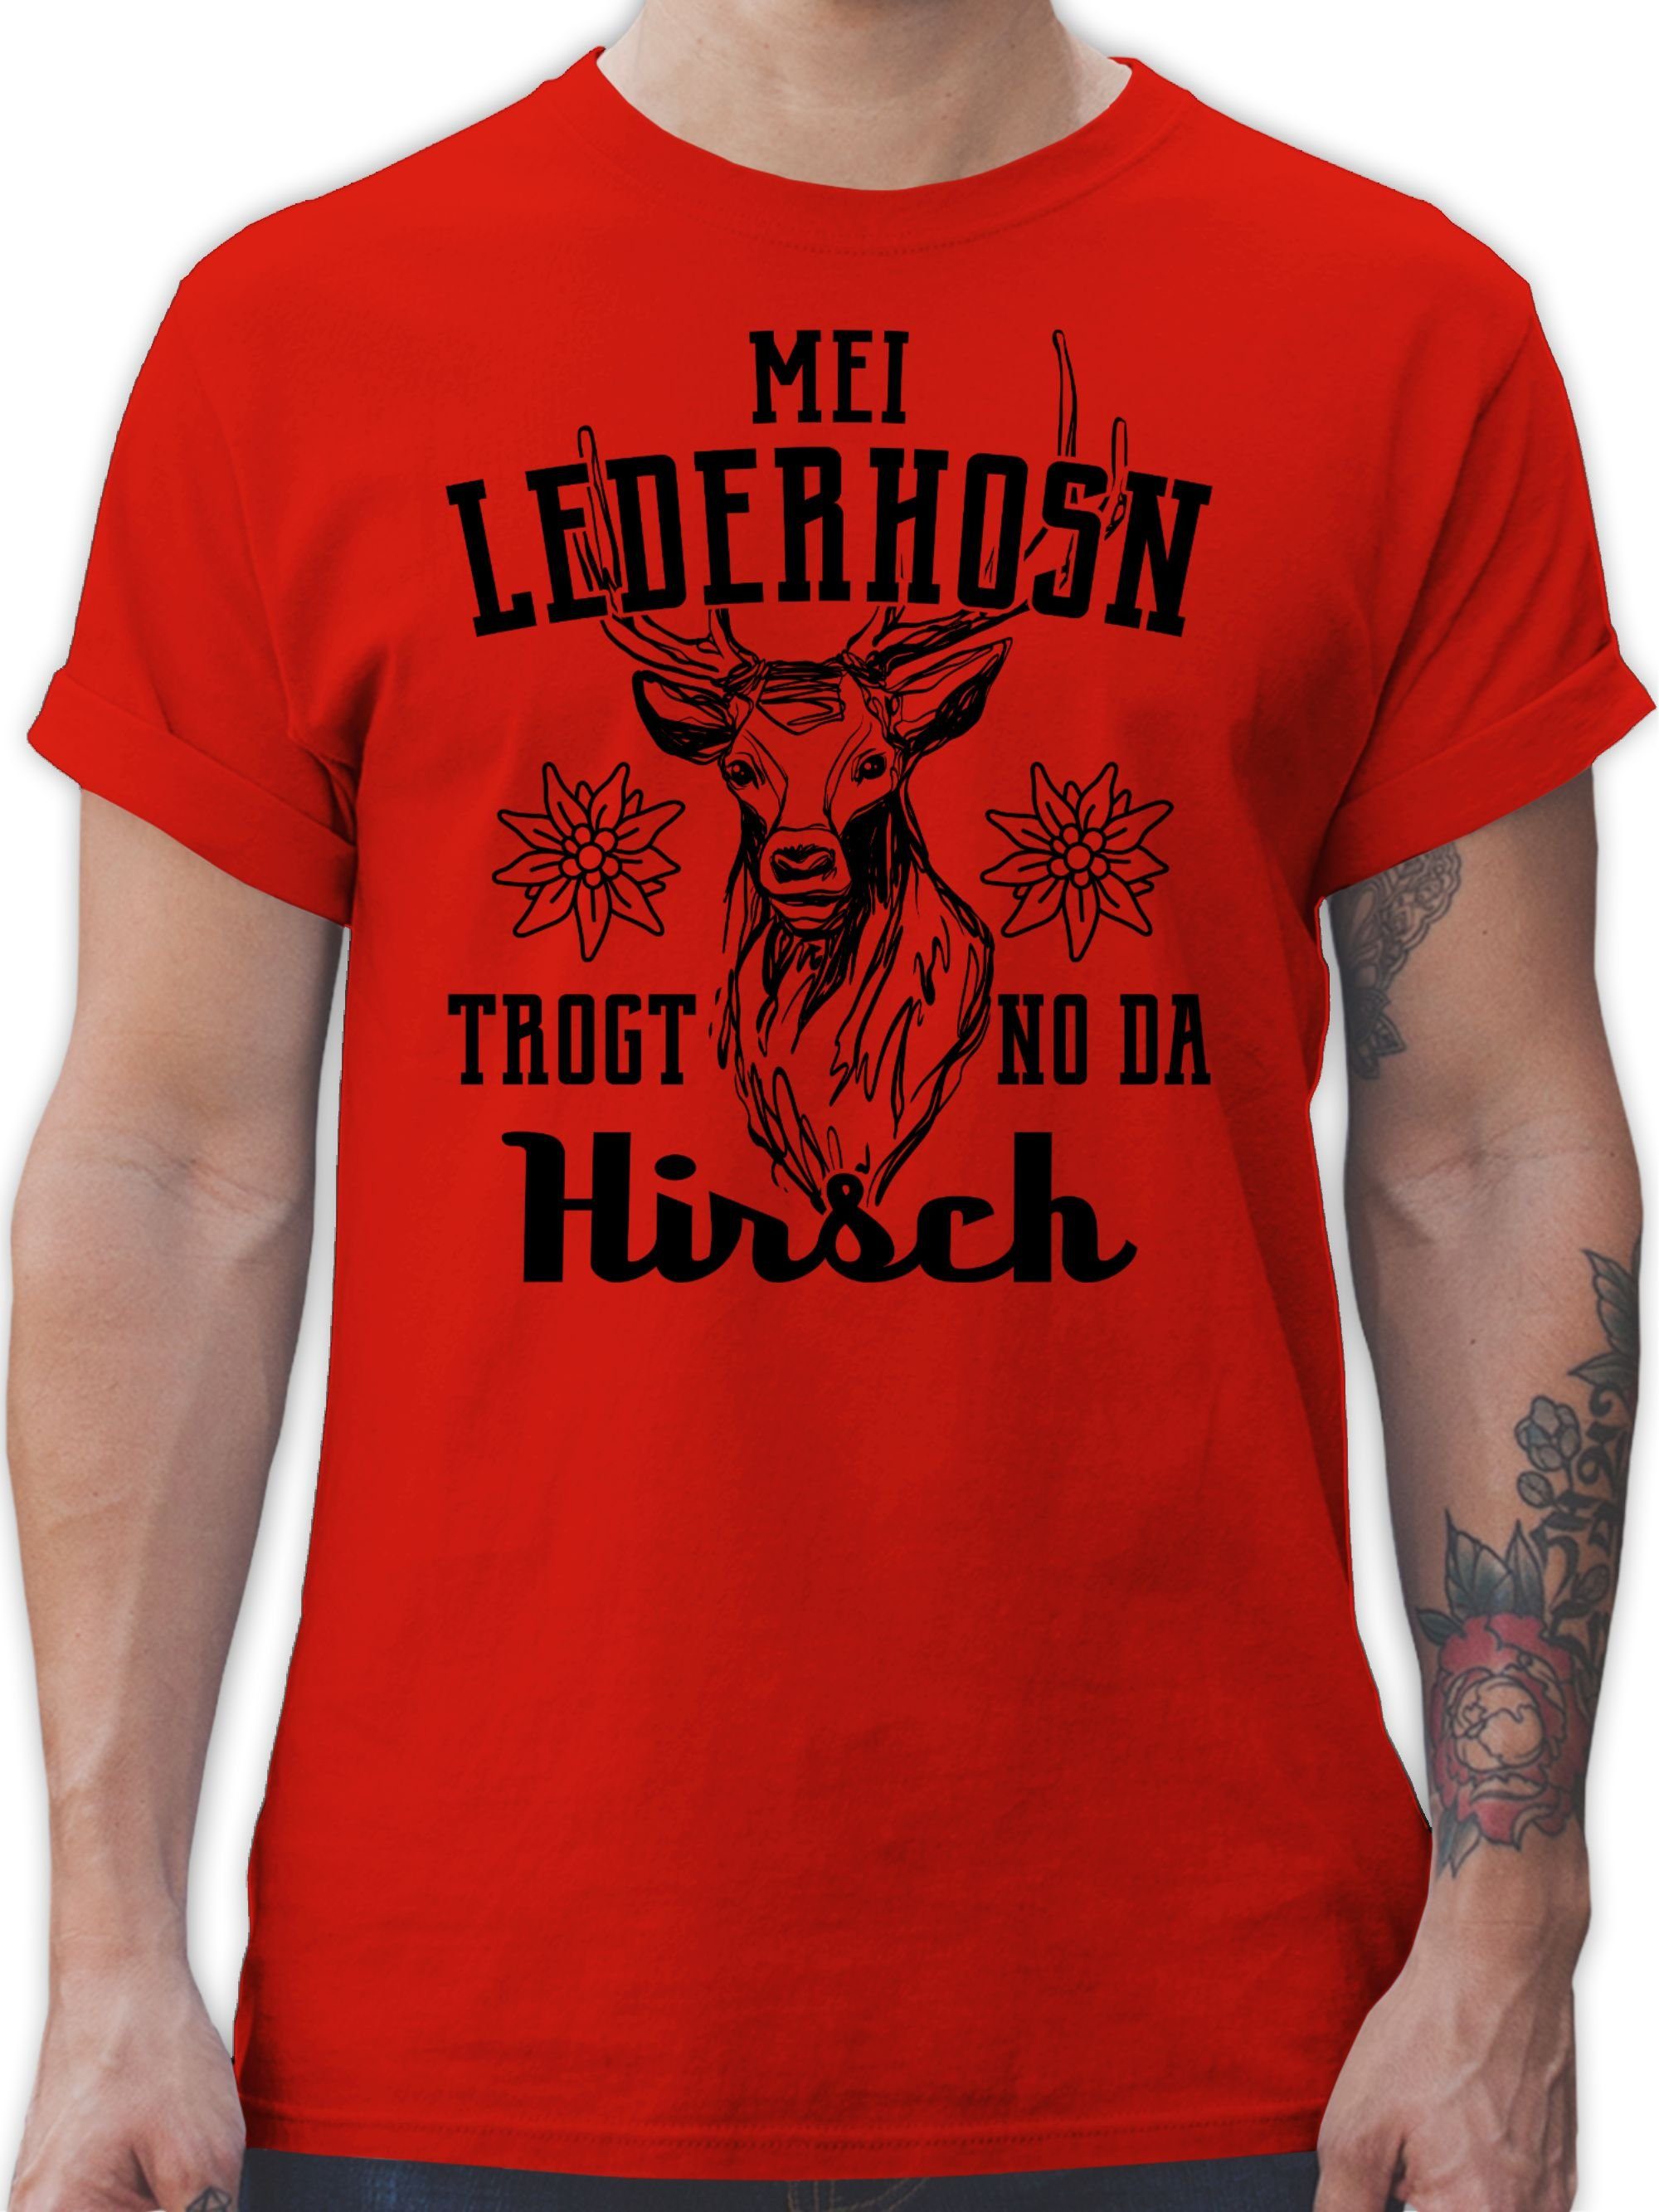 Shirtracer T-Shirt Mei 3 da Oktoberfest Mode Herren trogt Lederhosn schwarz Hirsch für no - Rot